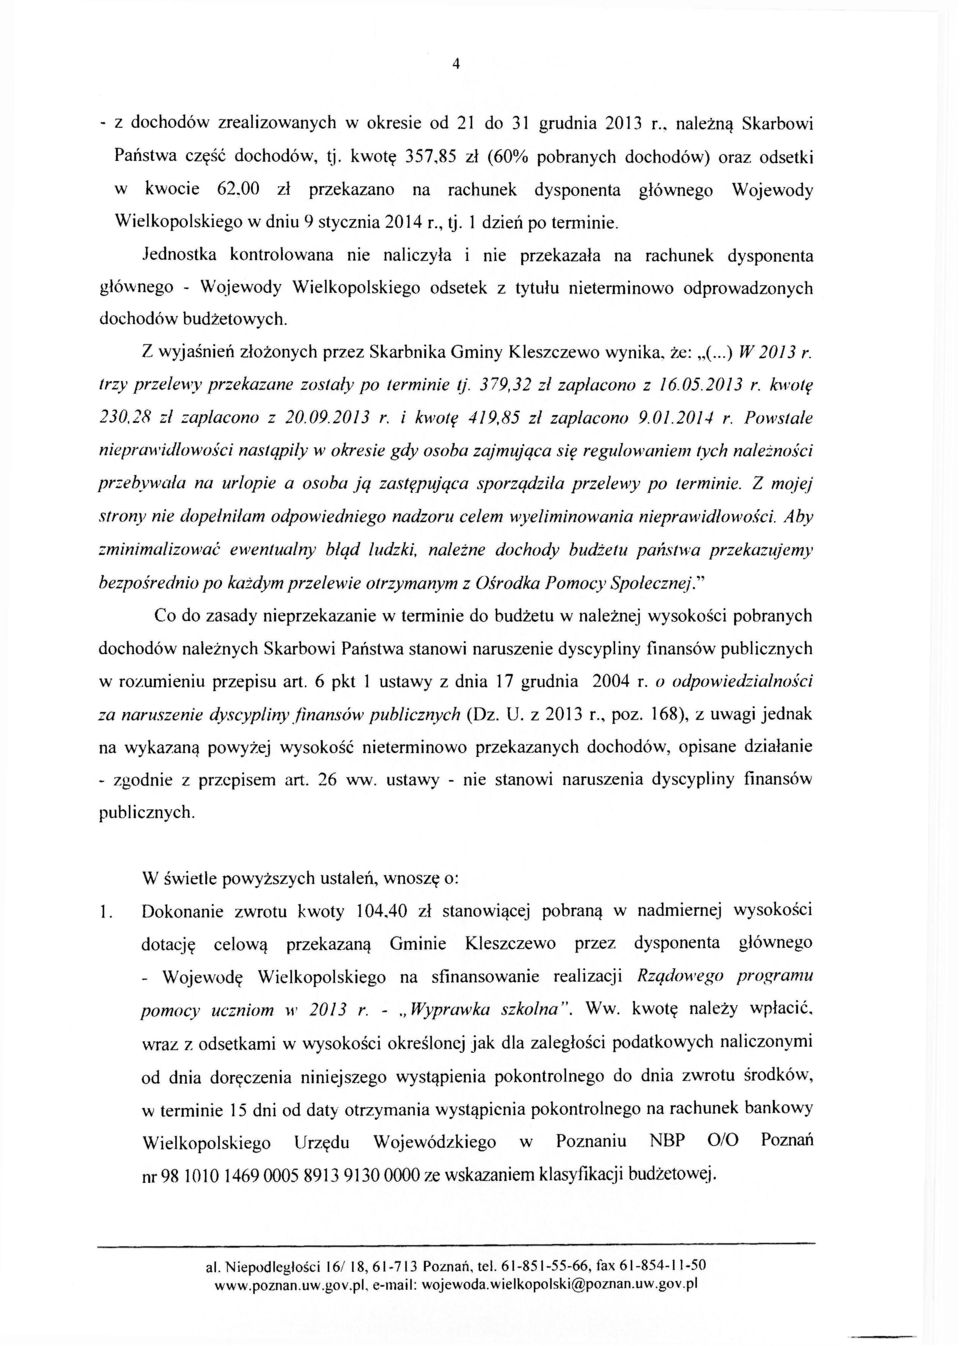 Jednostka kontrolowana nie naliczyła i nie przekazała na rachunek dysponenta głównego - Wojewody Wielkopolskiego odsetek z tytułu nieterminowo odprowadzonych dochodów budżetowych.